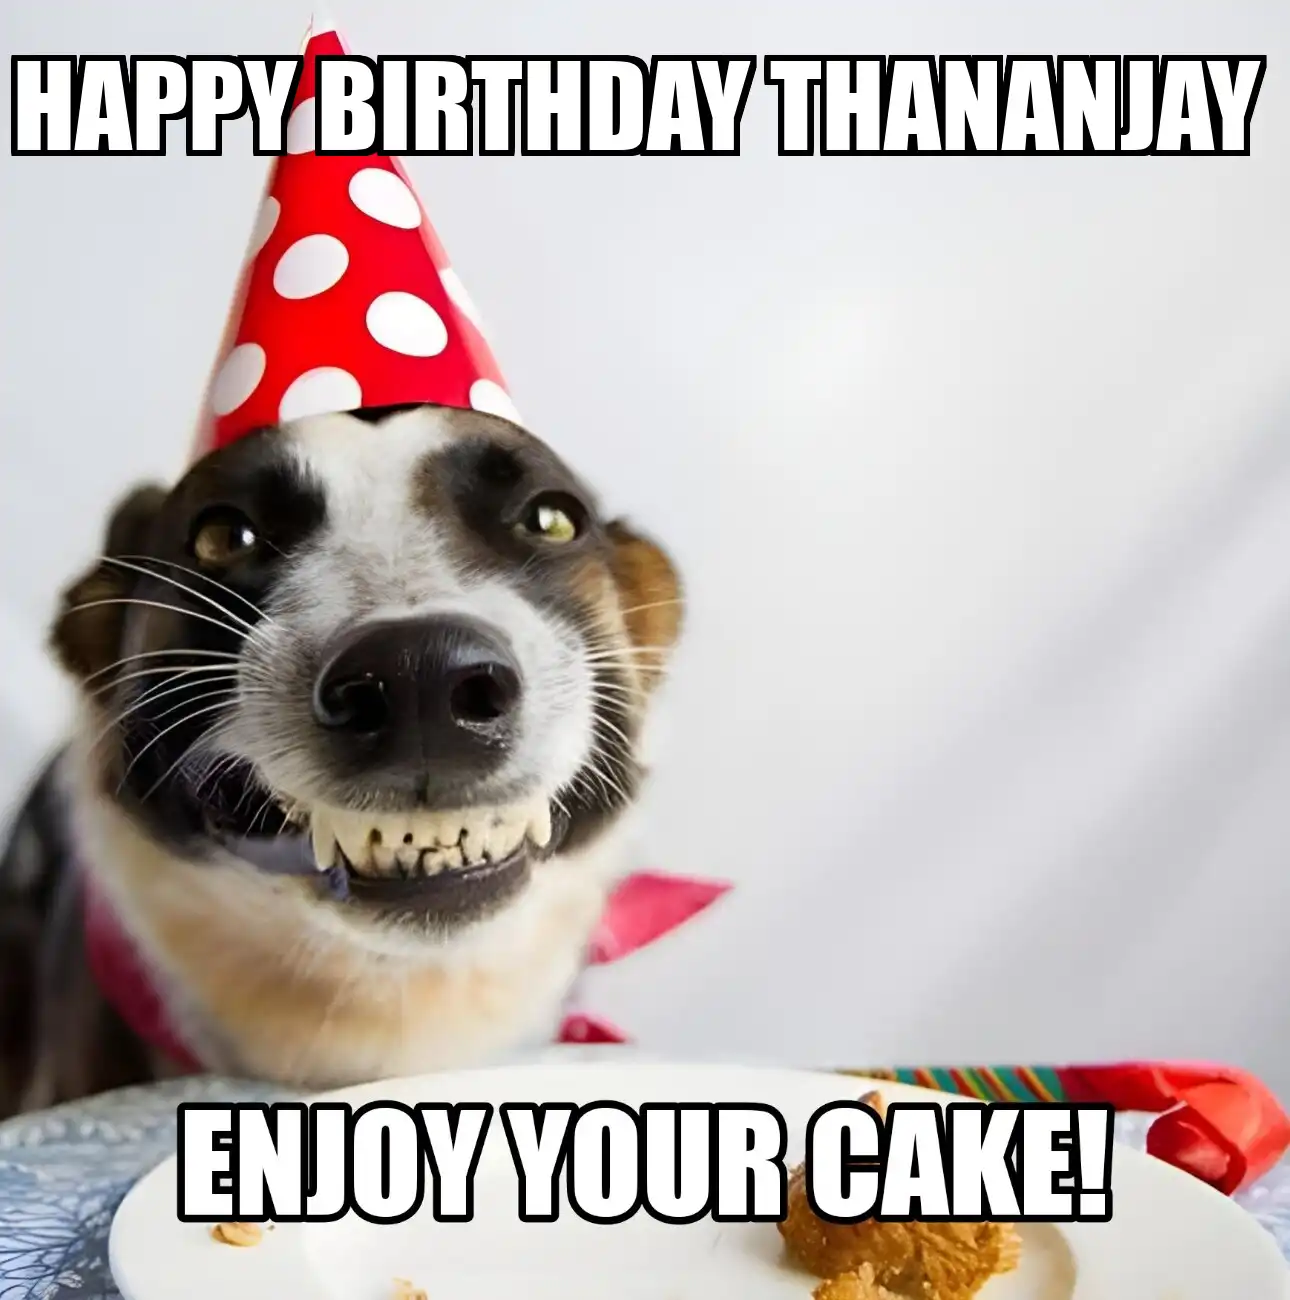 Happy Birthday Thananjay Enjoy Your Cake Dog Meme